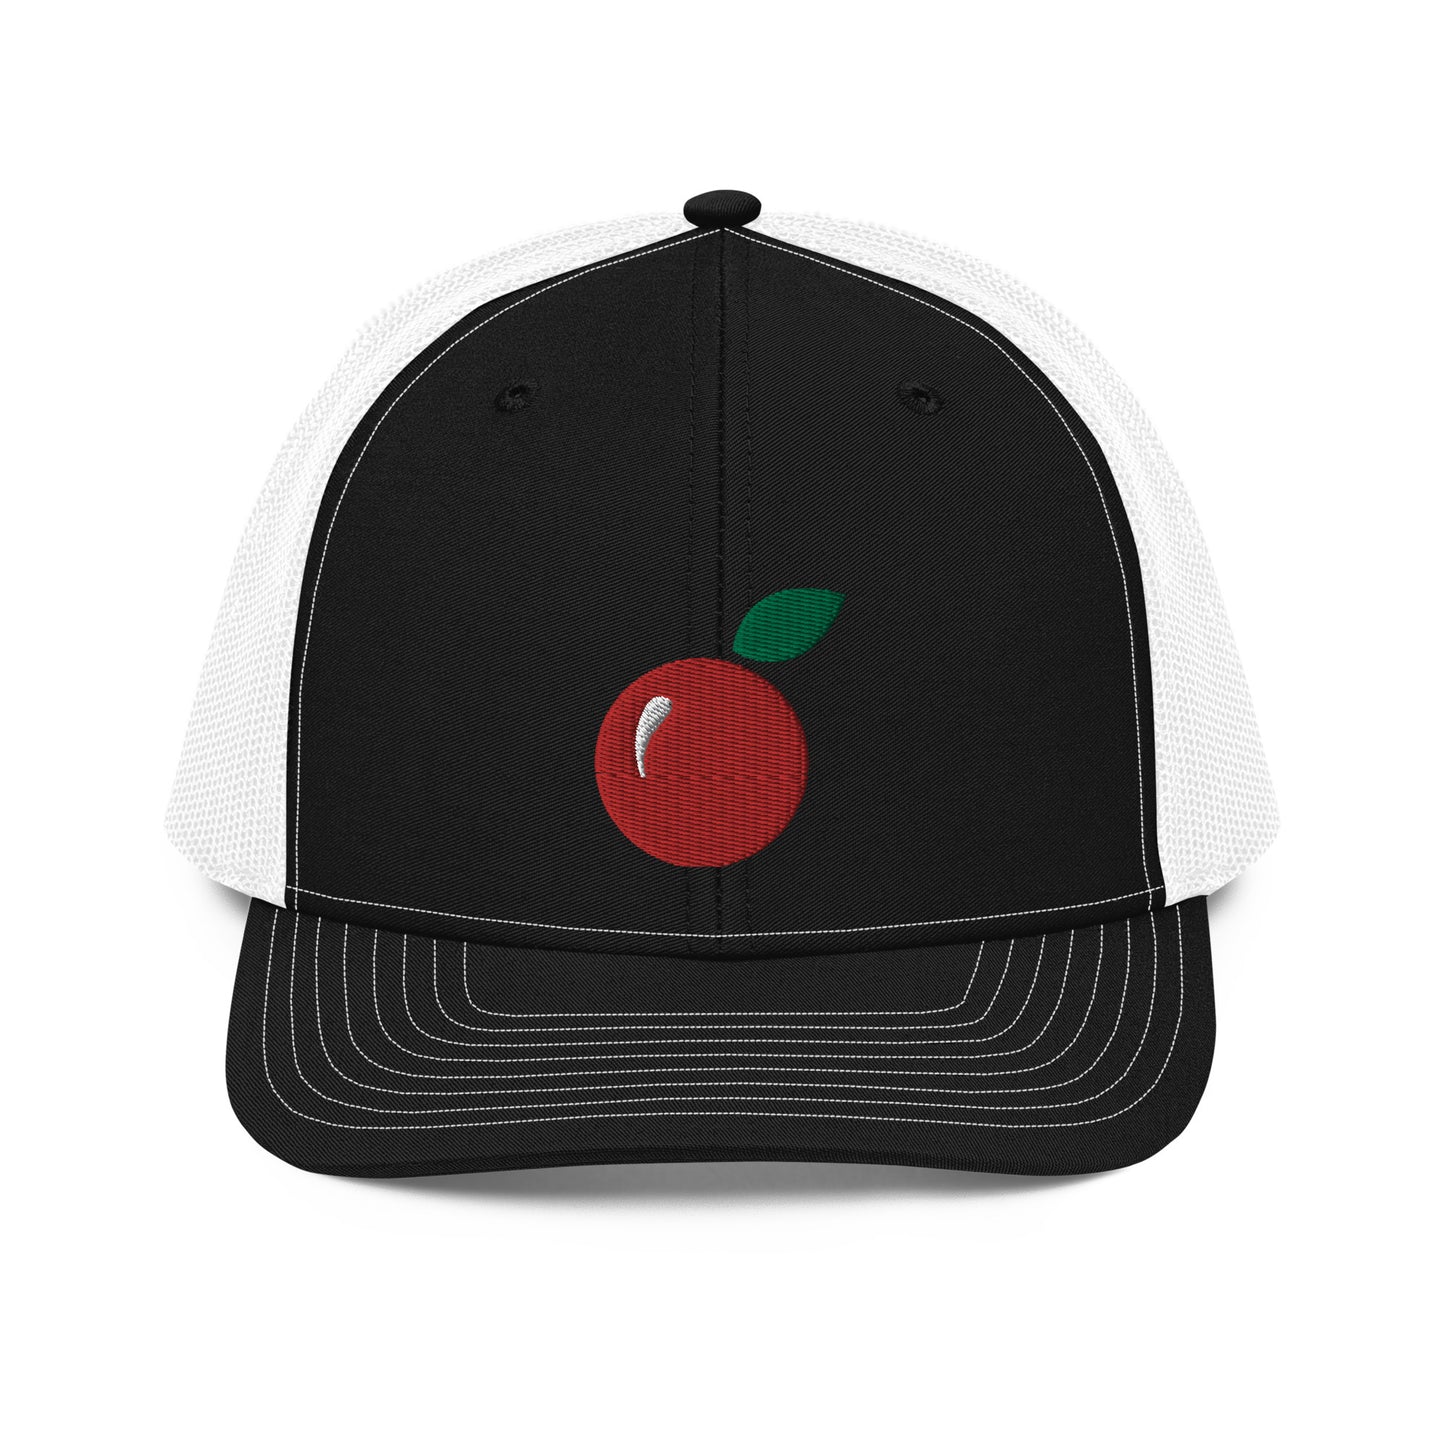 Trendy Trucker Cap For Tart Cherry Lovers